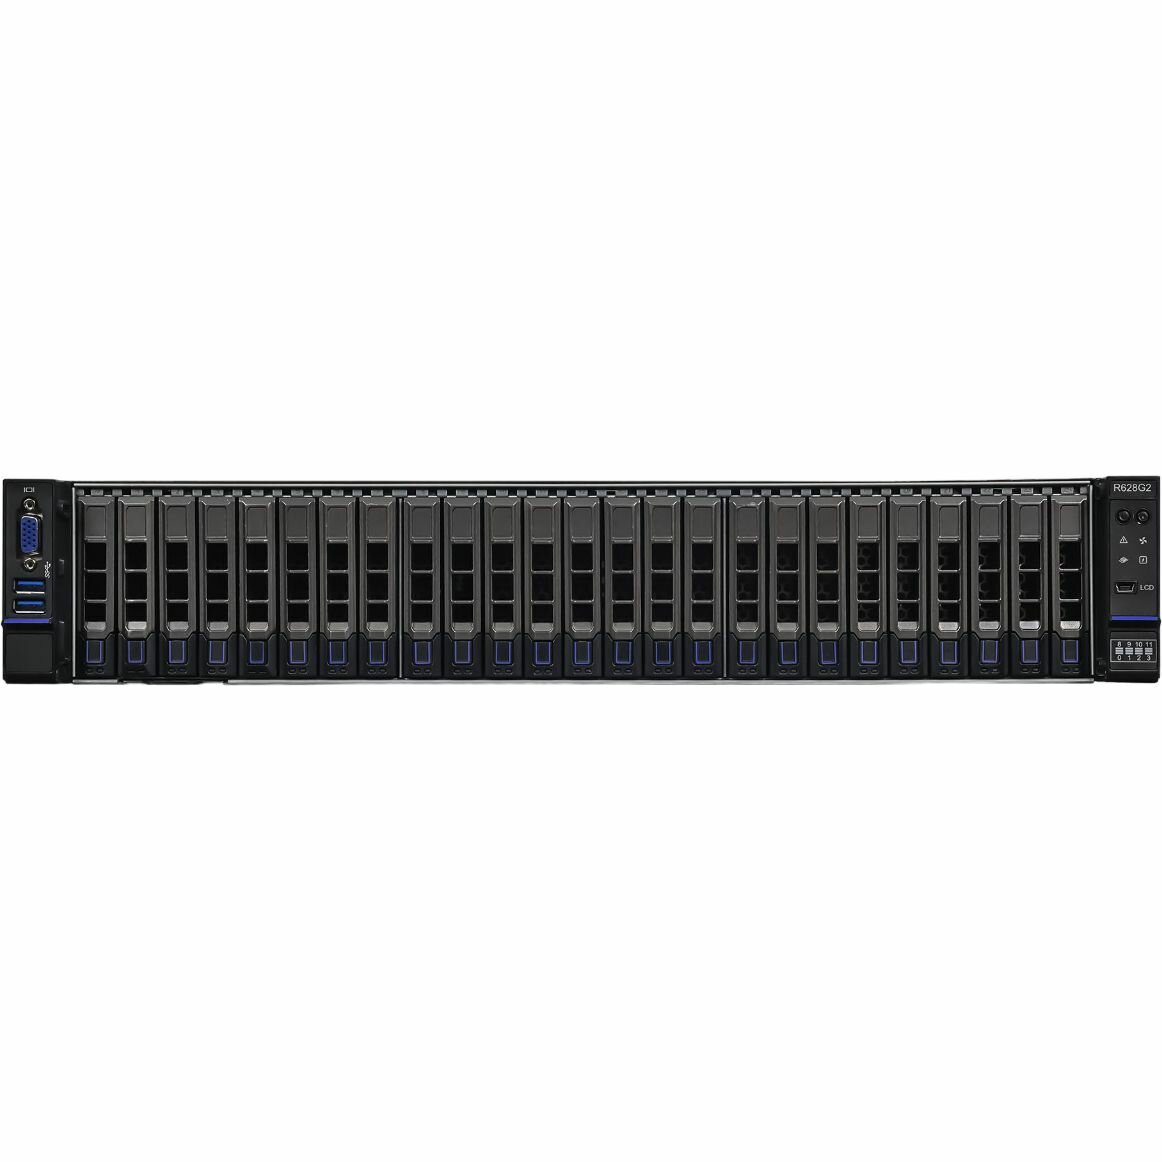 Серверная платформа HIPER Server R3 - Advanced (R3-T223225-13) - 2U/C621A/2x LGA4189 (Socket-P4)/Xeon SP поколения 3/270Вт TDP/32x DIMM/25x